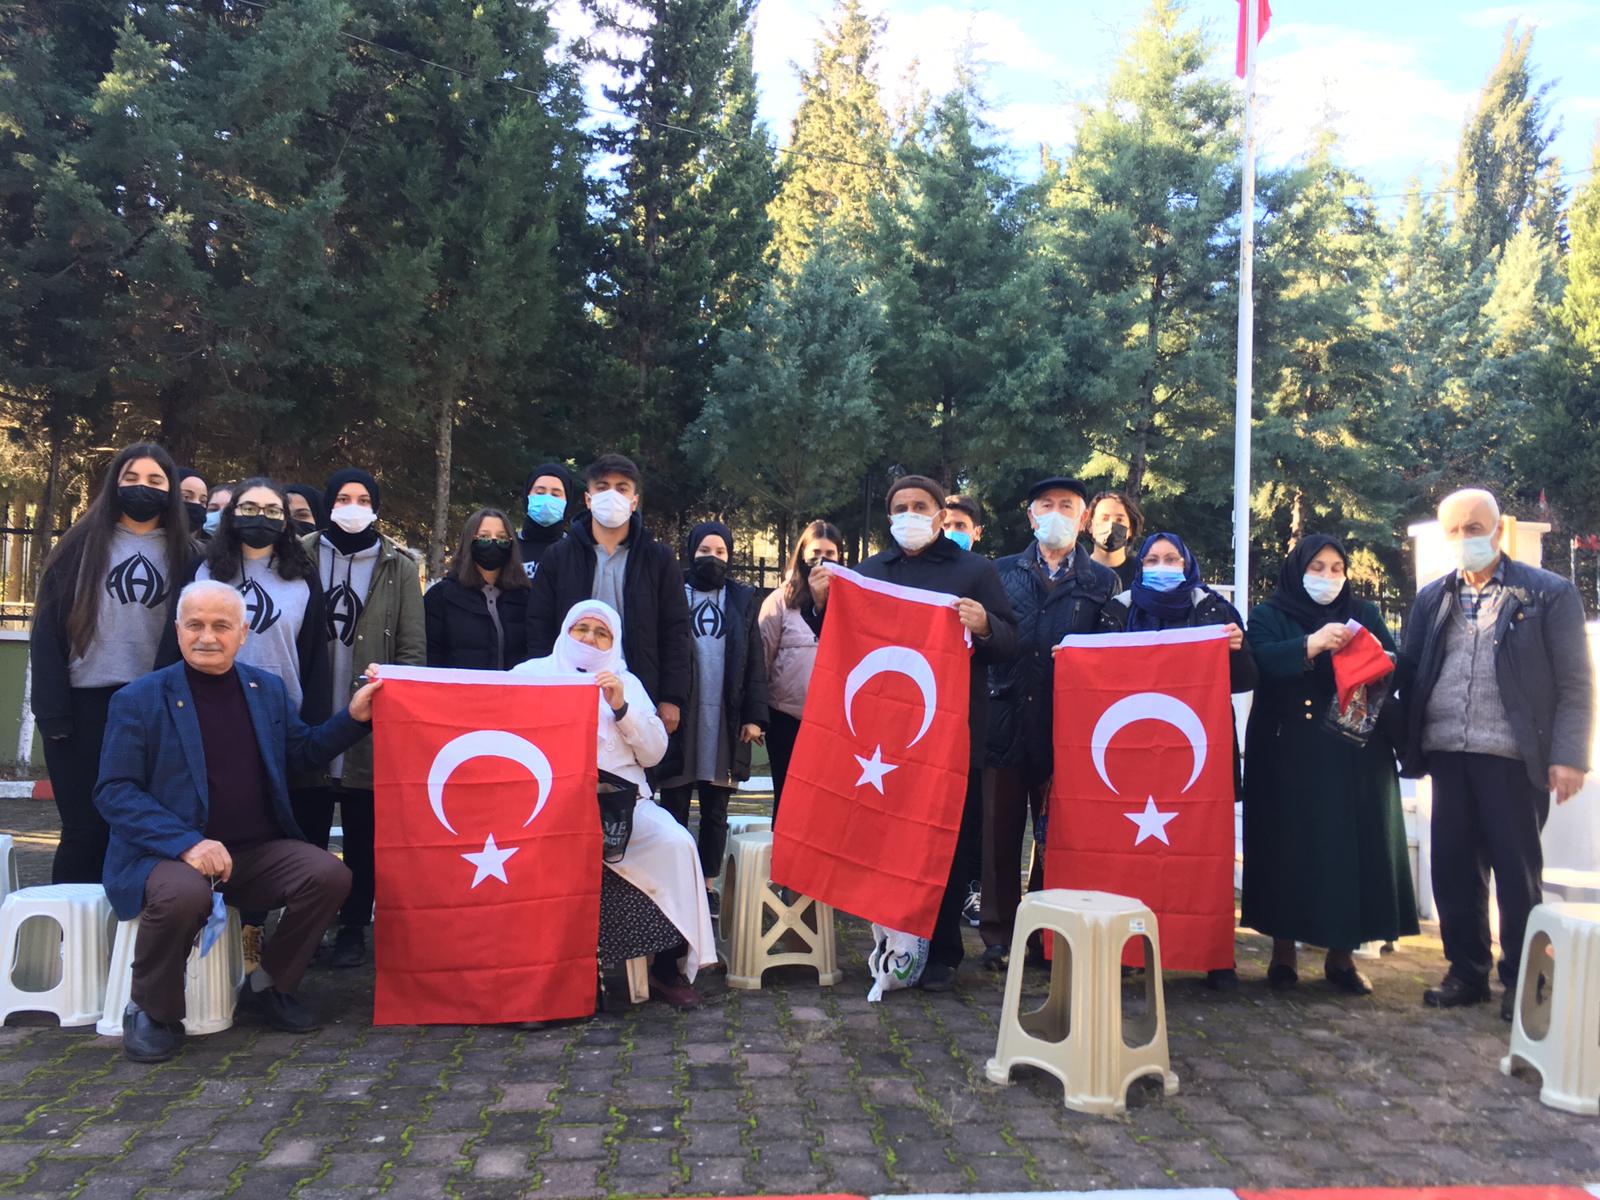 Gebze Anibal Anadolu Lisesi öğrencilerinden şehitlik ziyareti